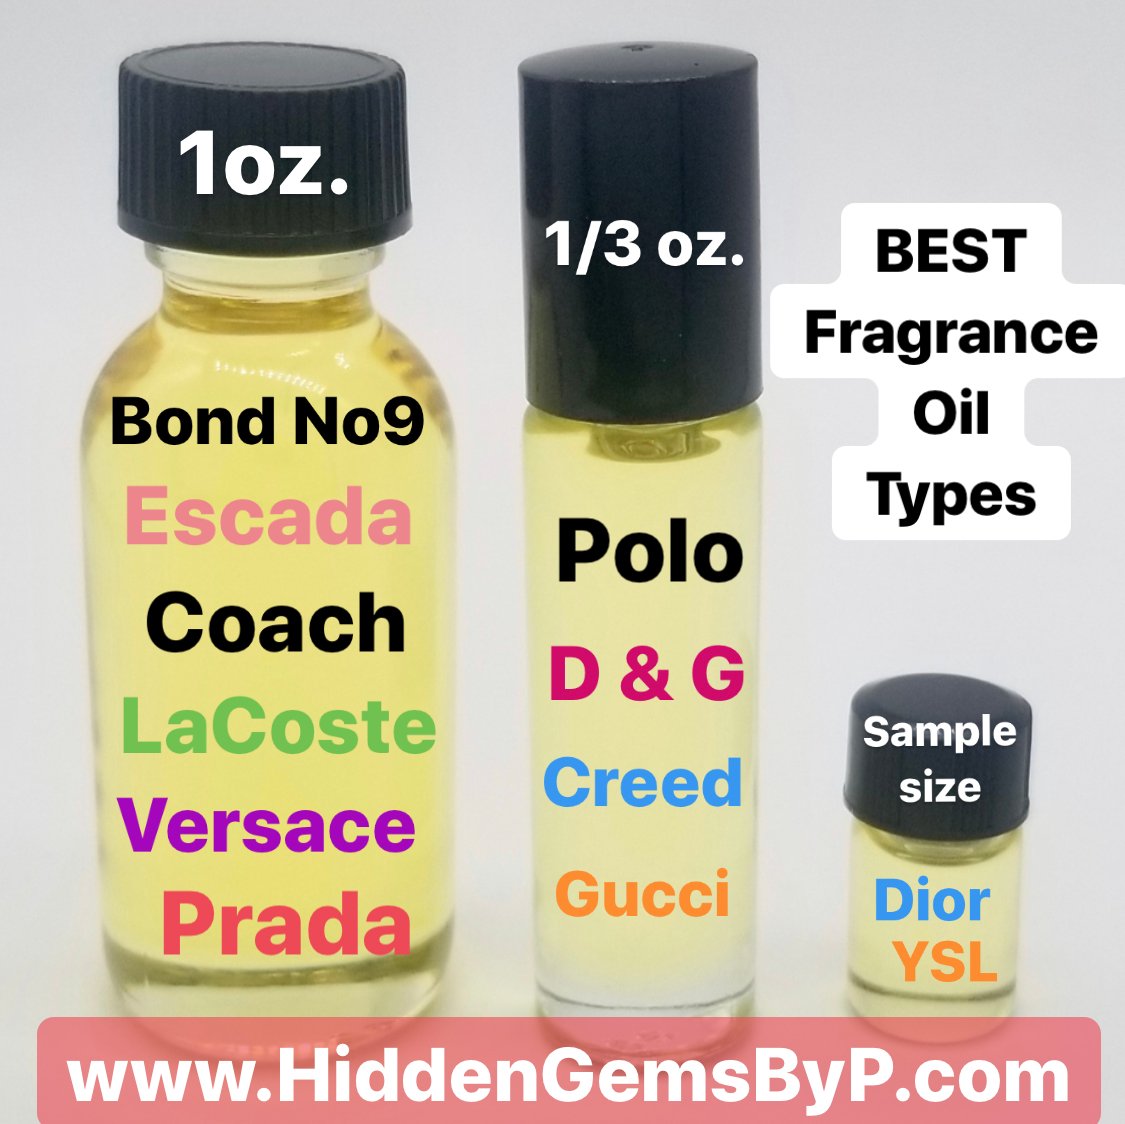 List of Perfume Oil Types